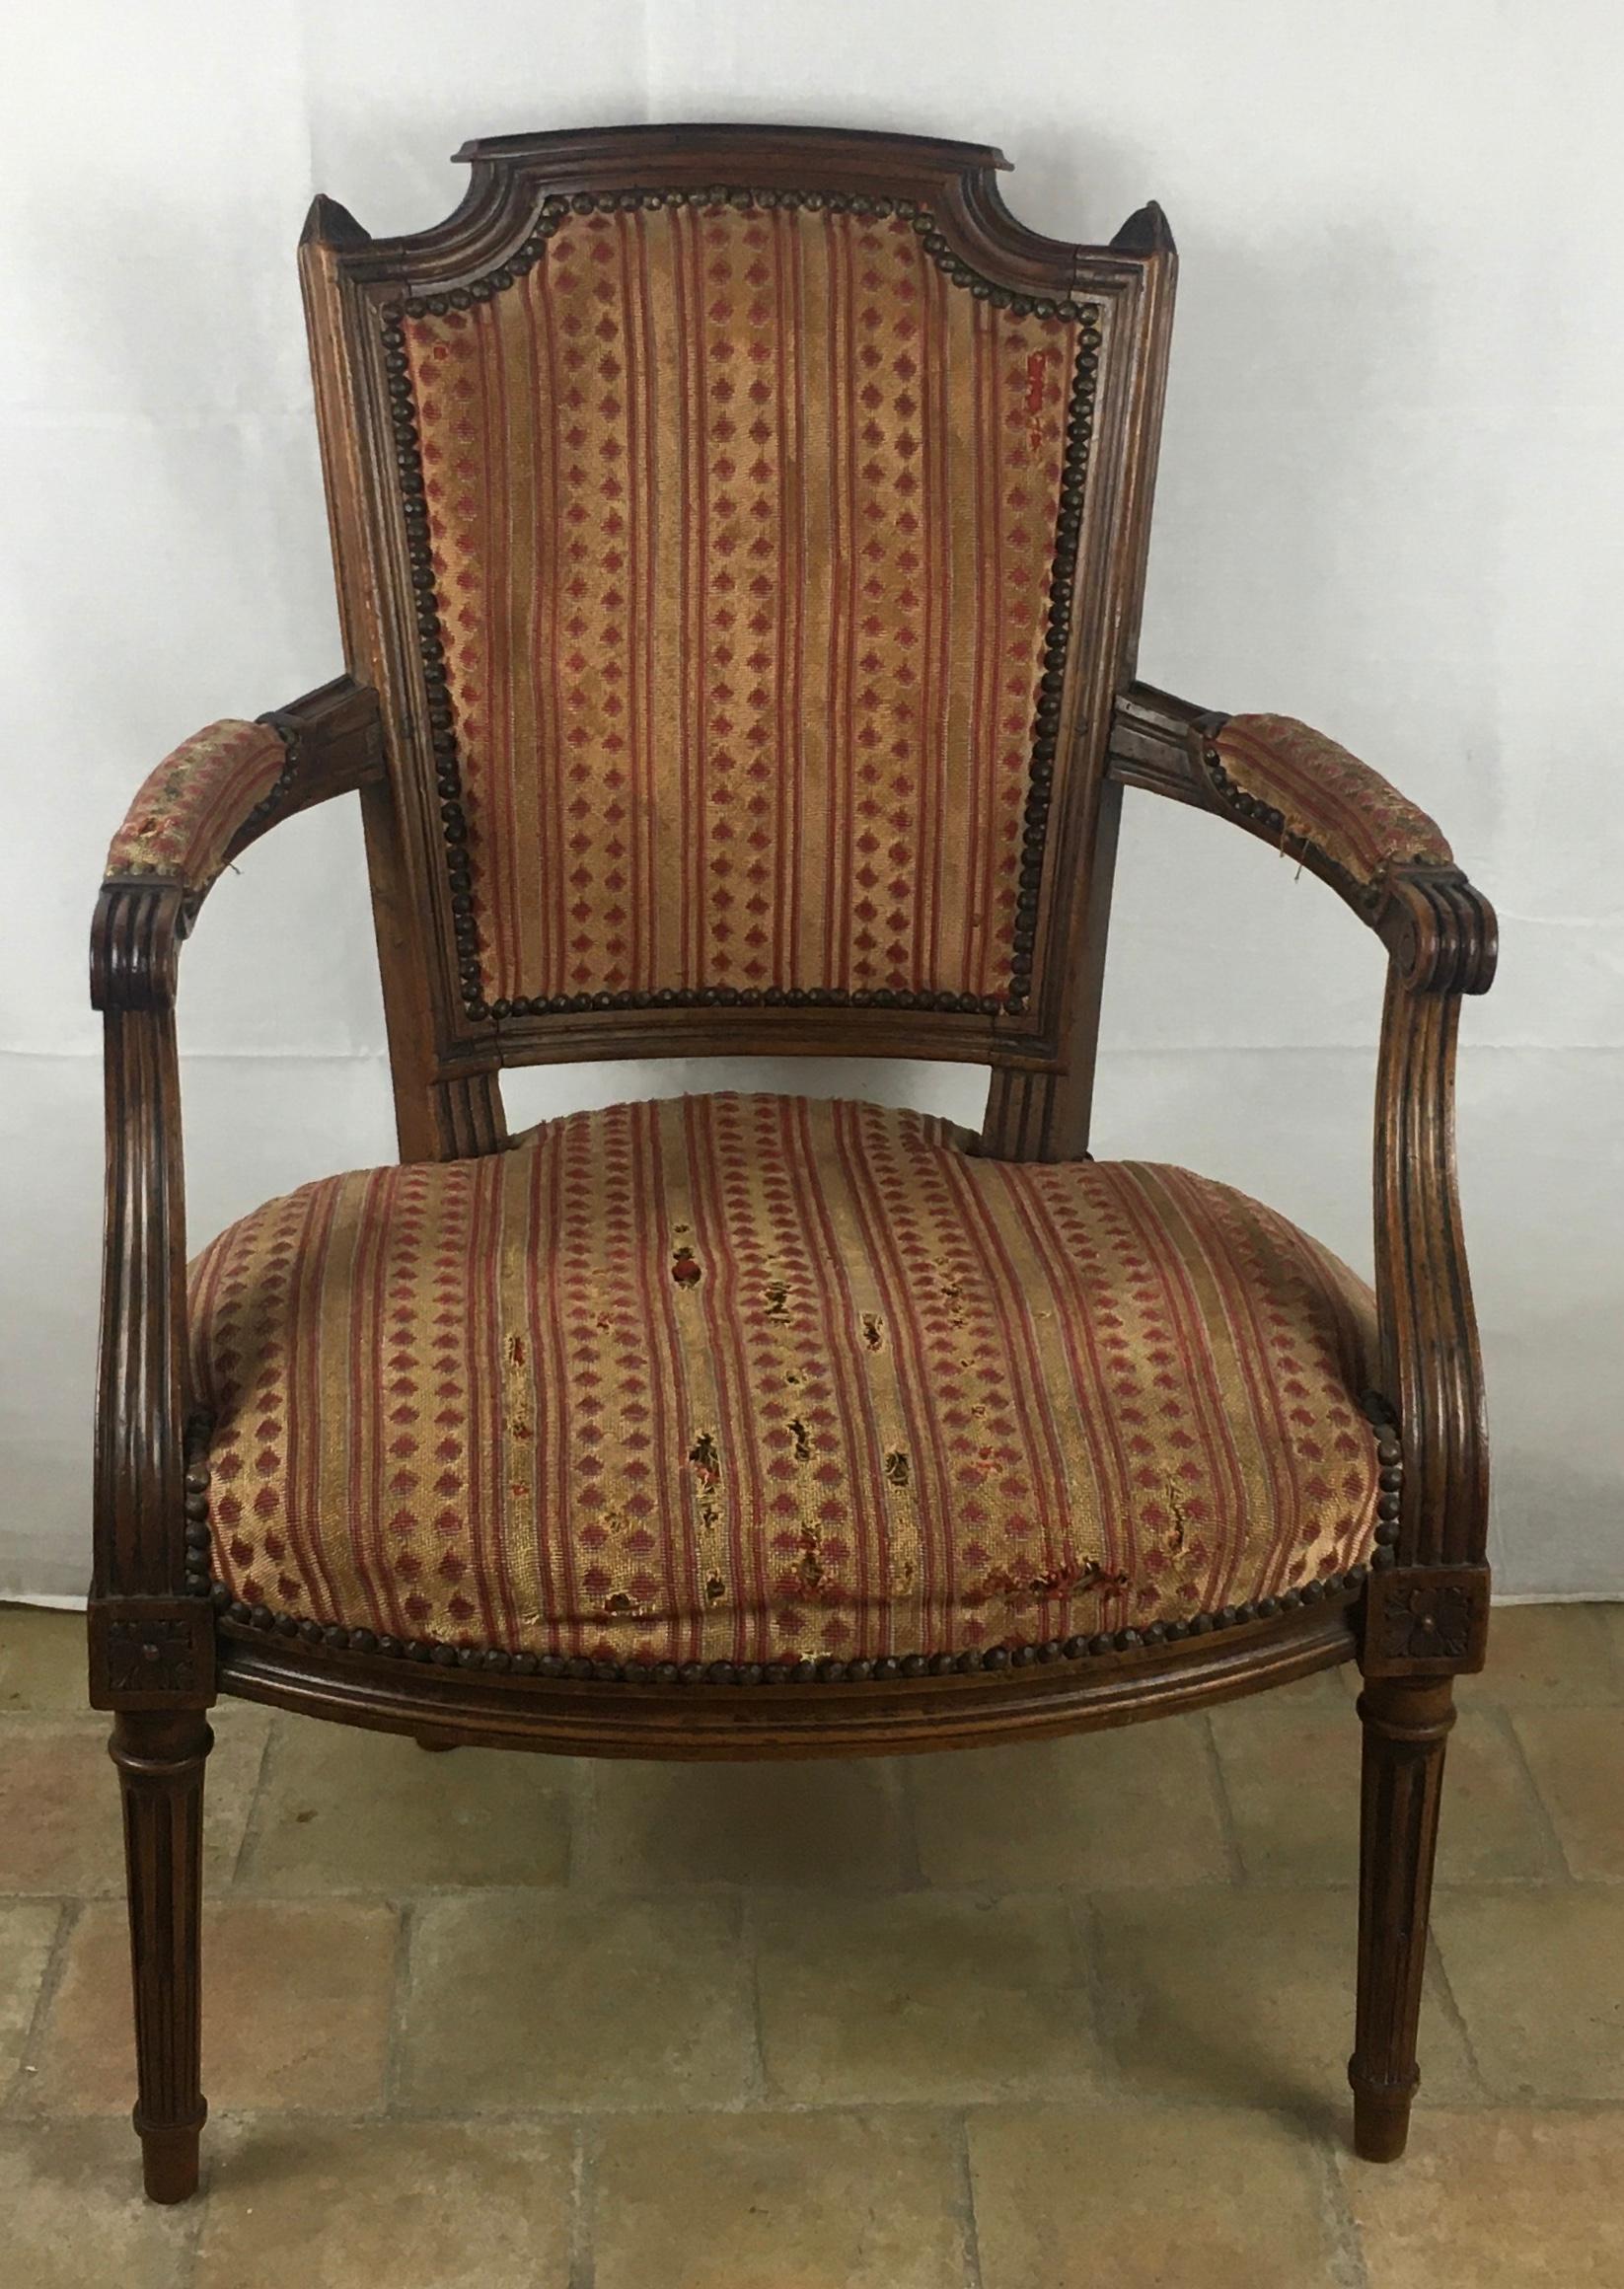 Importante paire de fauteuils Louis XVI du XVIIIe siècle estampillés Menuisier du Roy.

De proportions très généreuses, ces magnifiques fauteuils sont construits en bois de hêtre solide et sont suffisamment robustes pour être utilisés